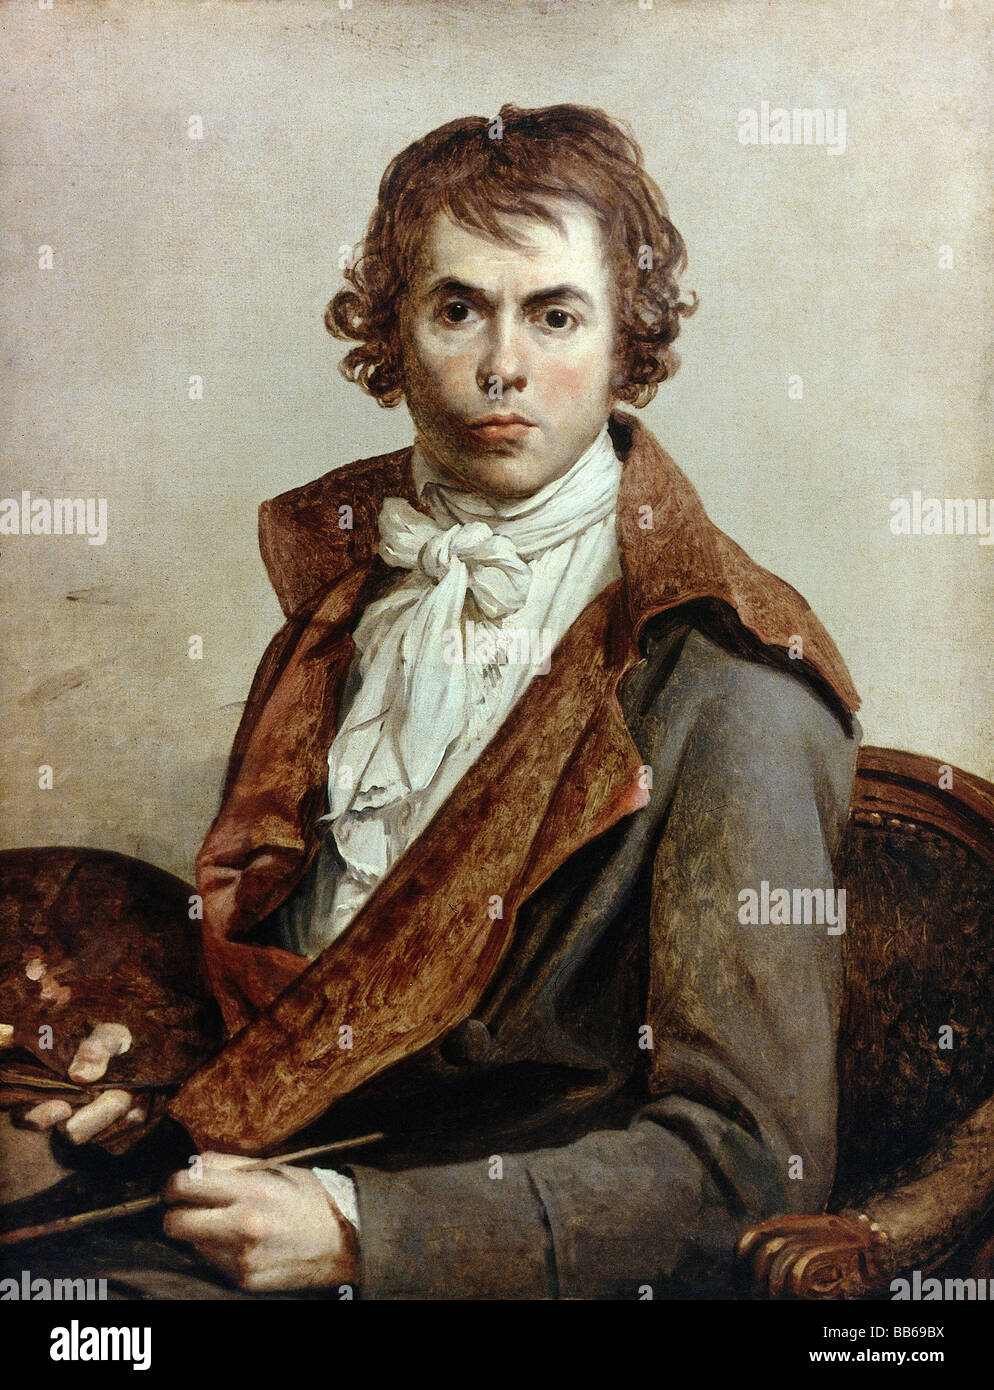 David, Jacques-Louis, 31.8.1748 - 24.12.1825, pittore francese, lunghezza autonoma, 81 cm x 64 cm, 1794, Louvre, Parigi, Foto Stock